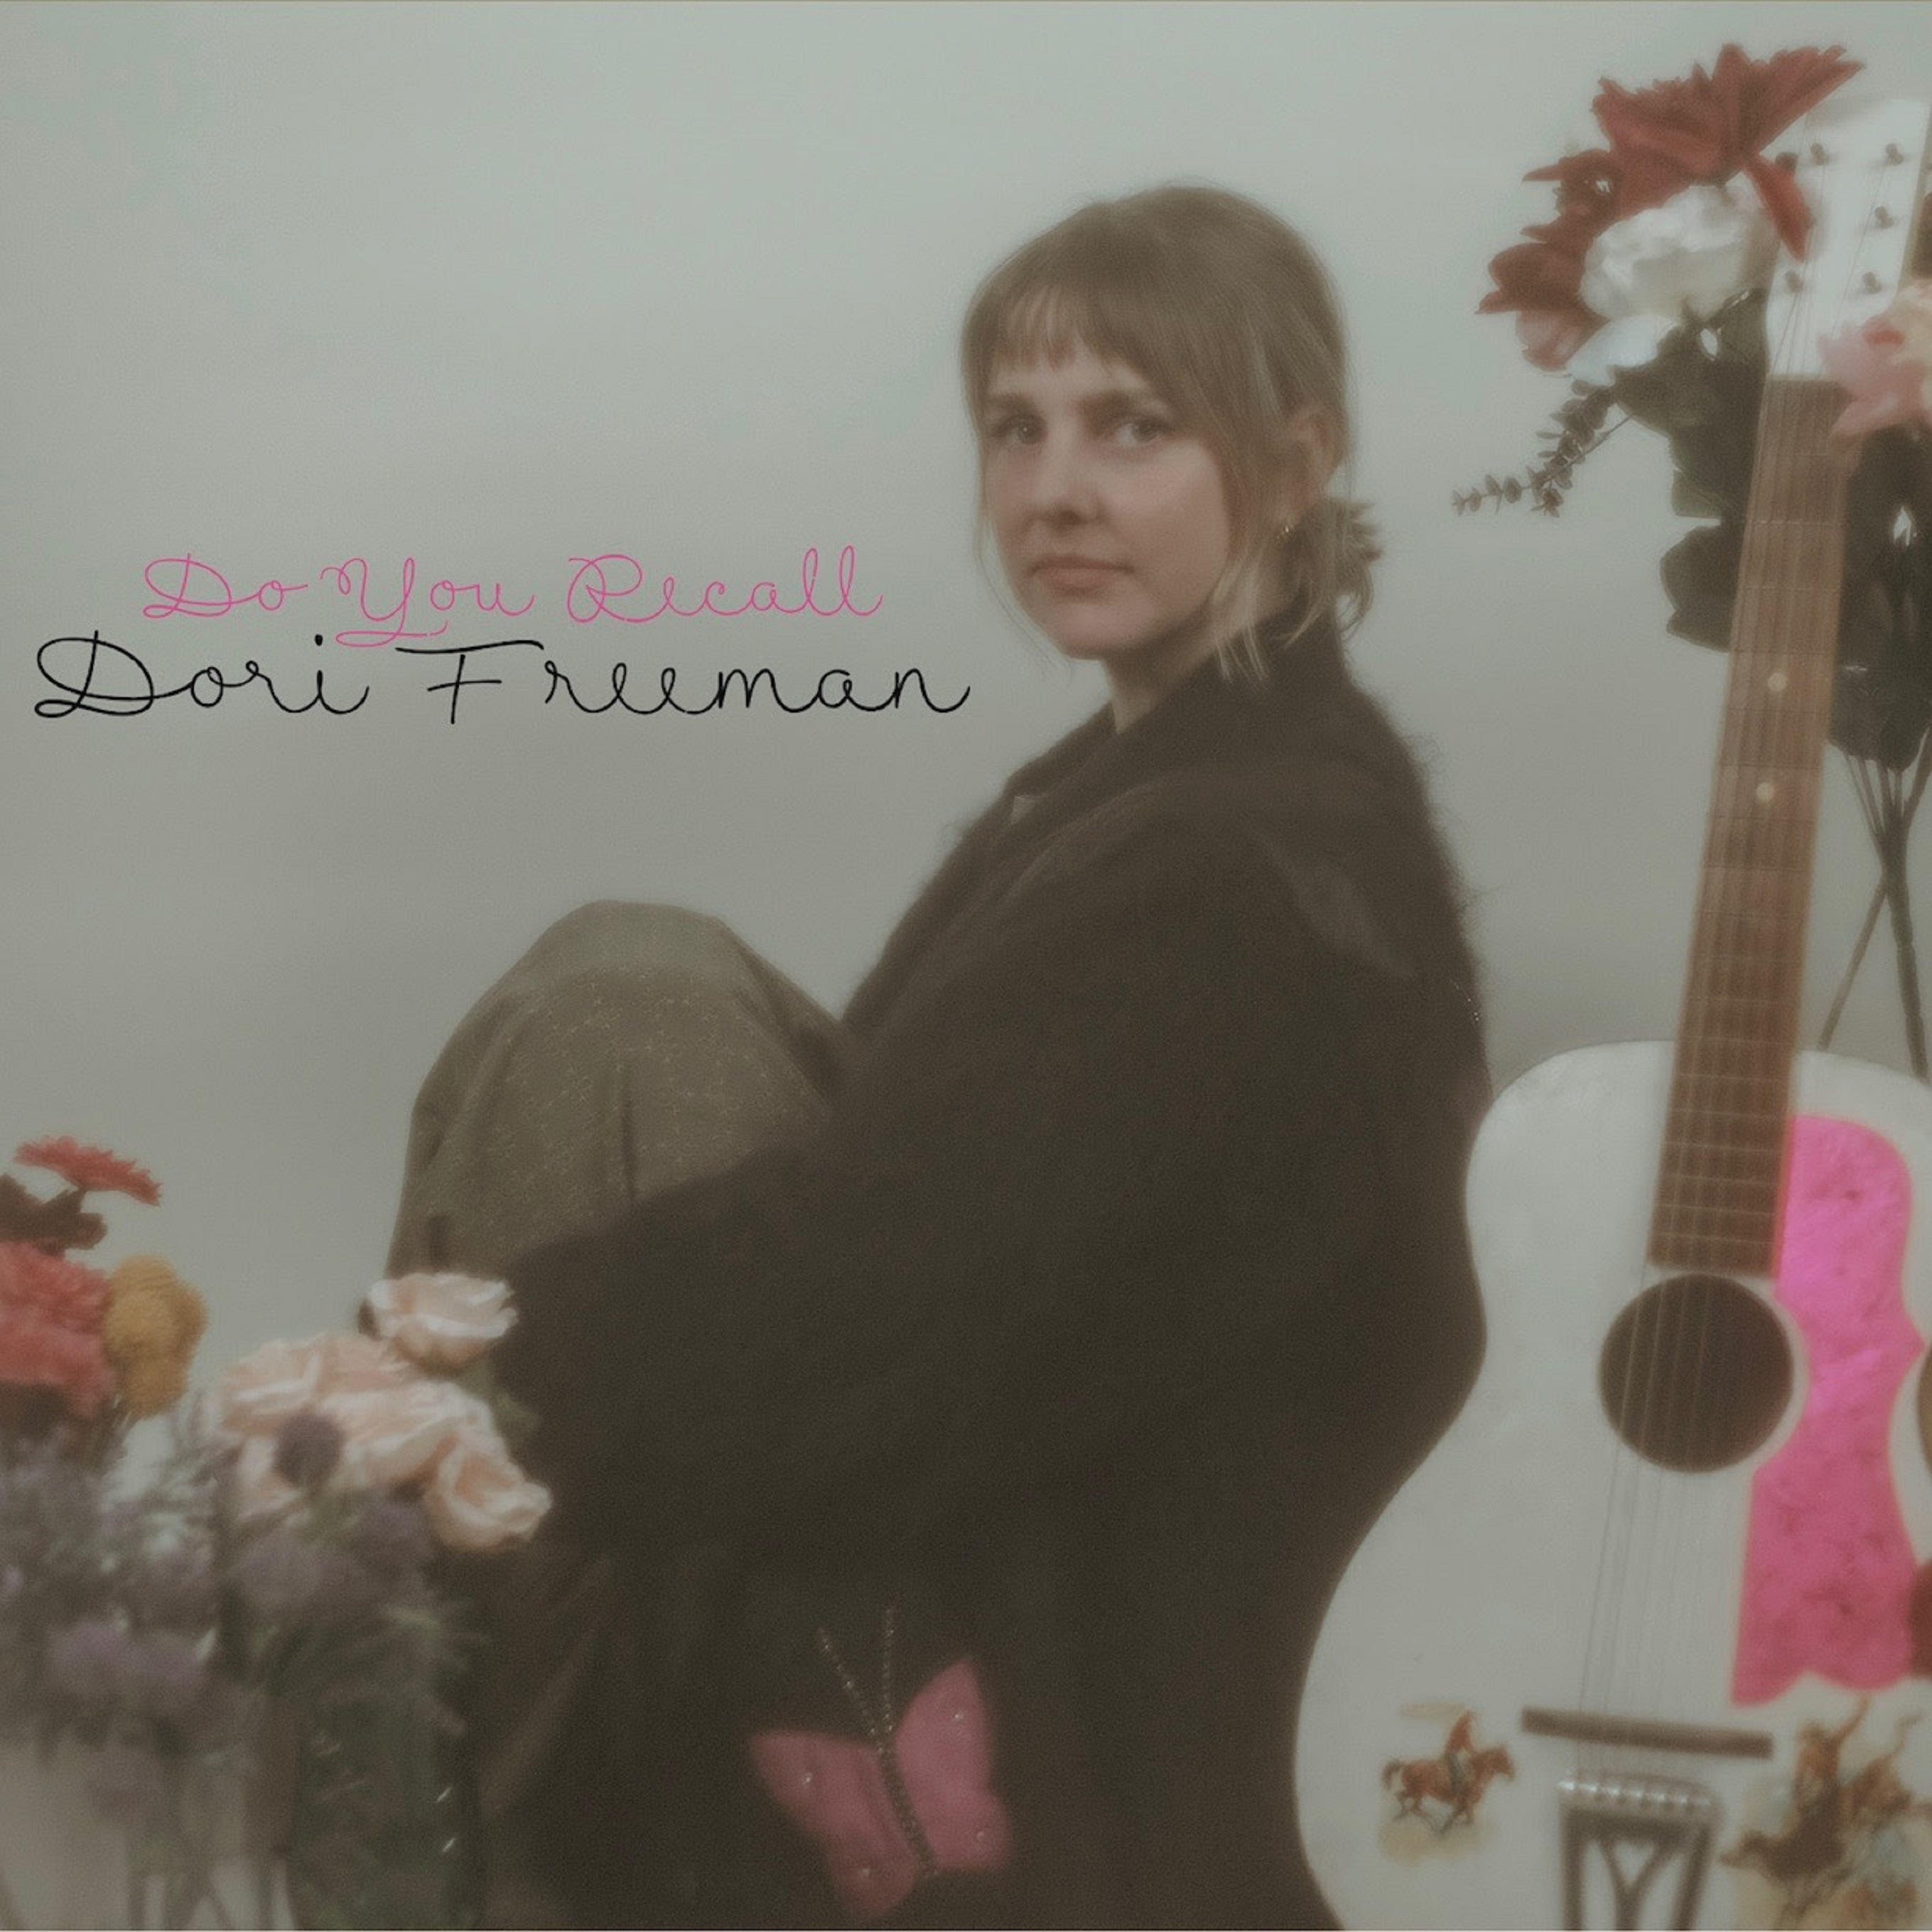 Dori Freeman Announces New Album 'Do You Recall' + Shares Title Track